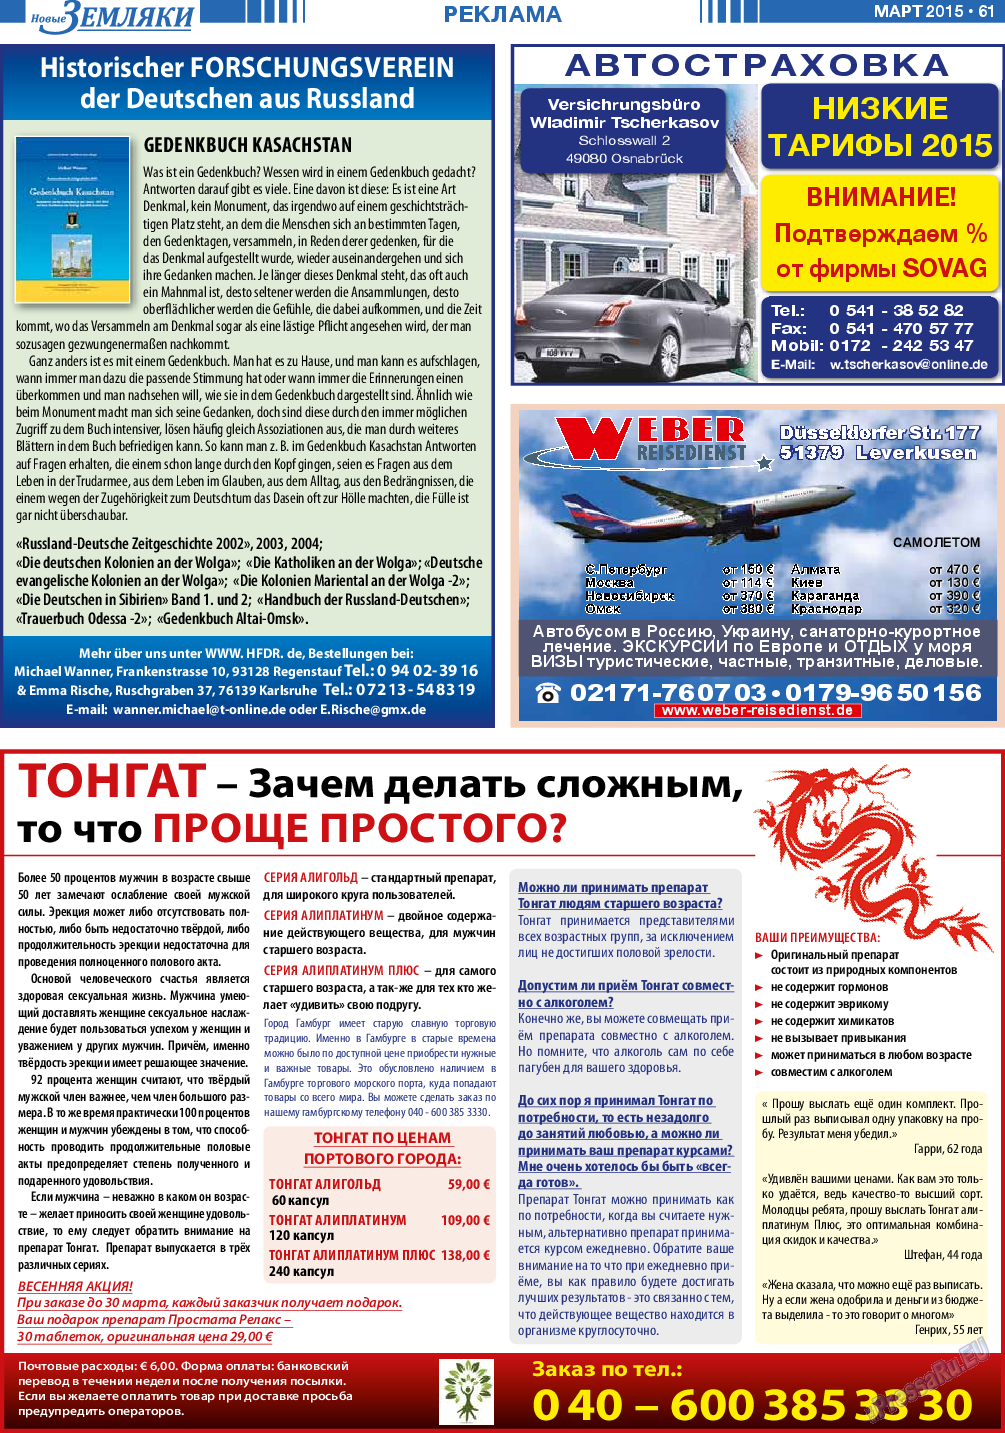 Новые Земляки, газета. 2015 №3 стр.61